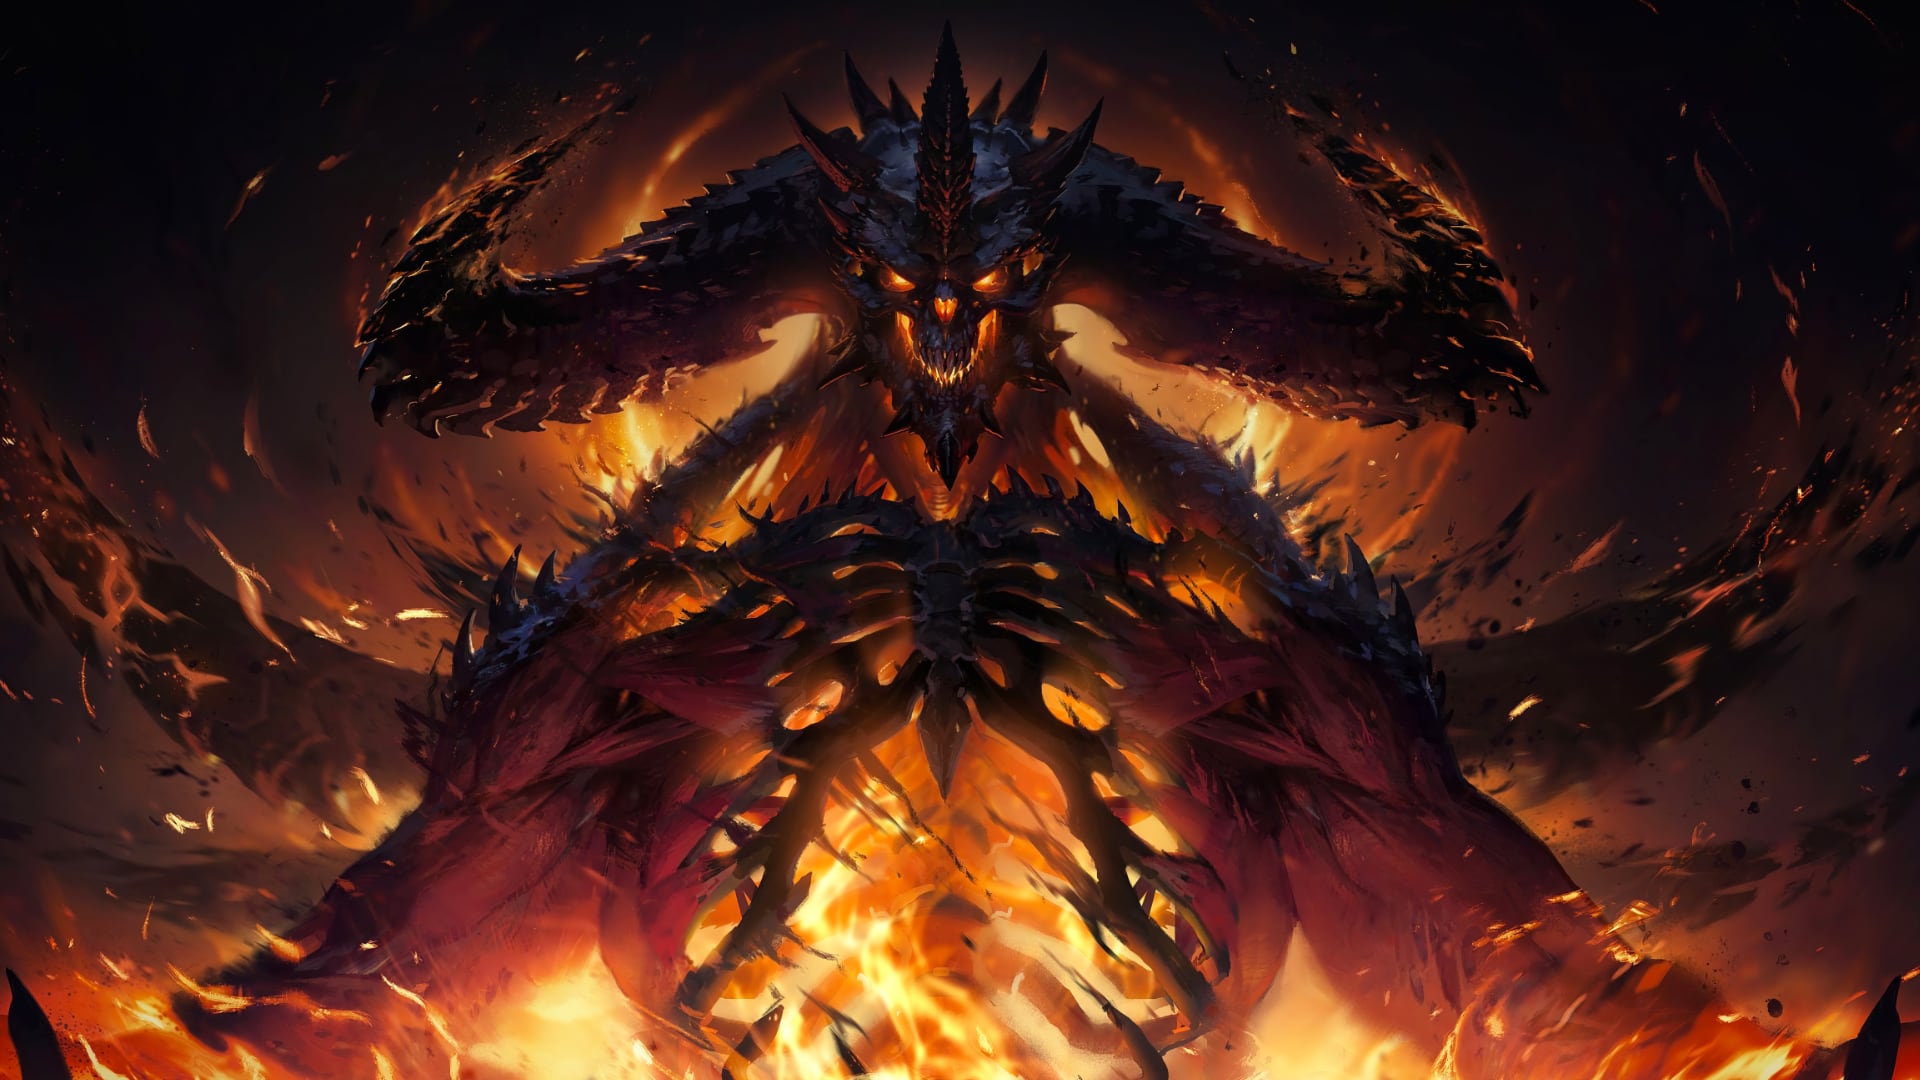 Diablo Immortal generates $14.5 million on mobile in 1 week